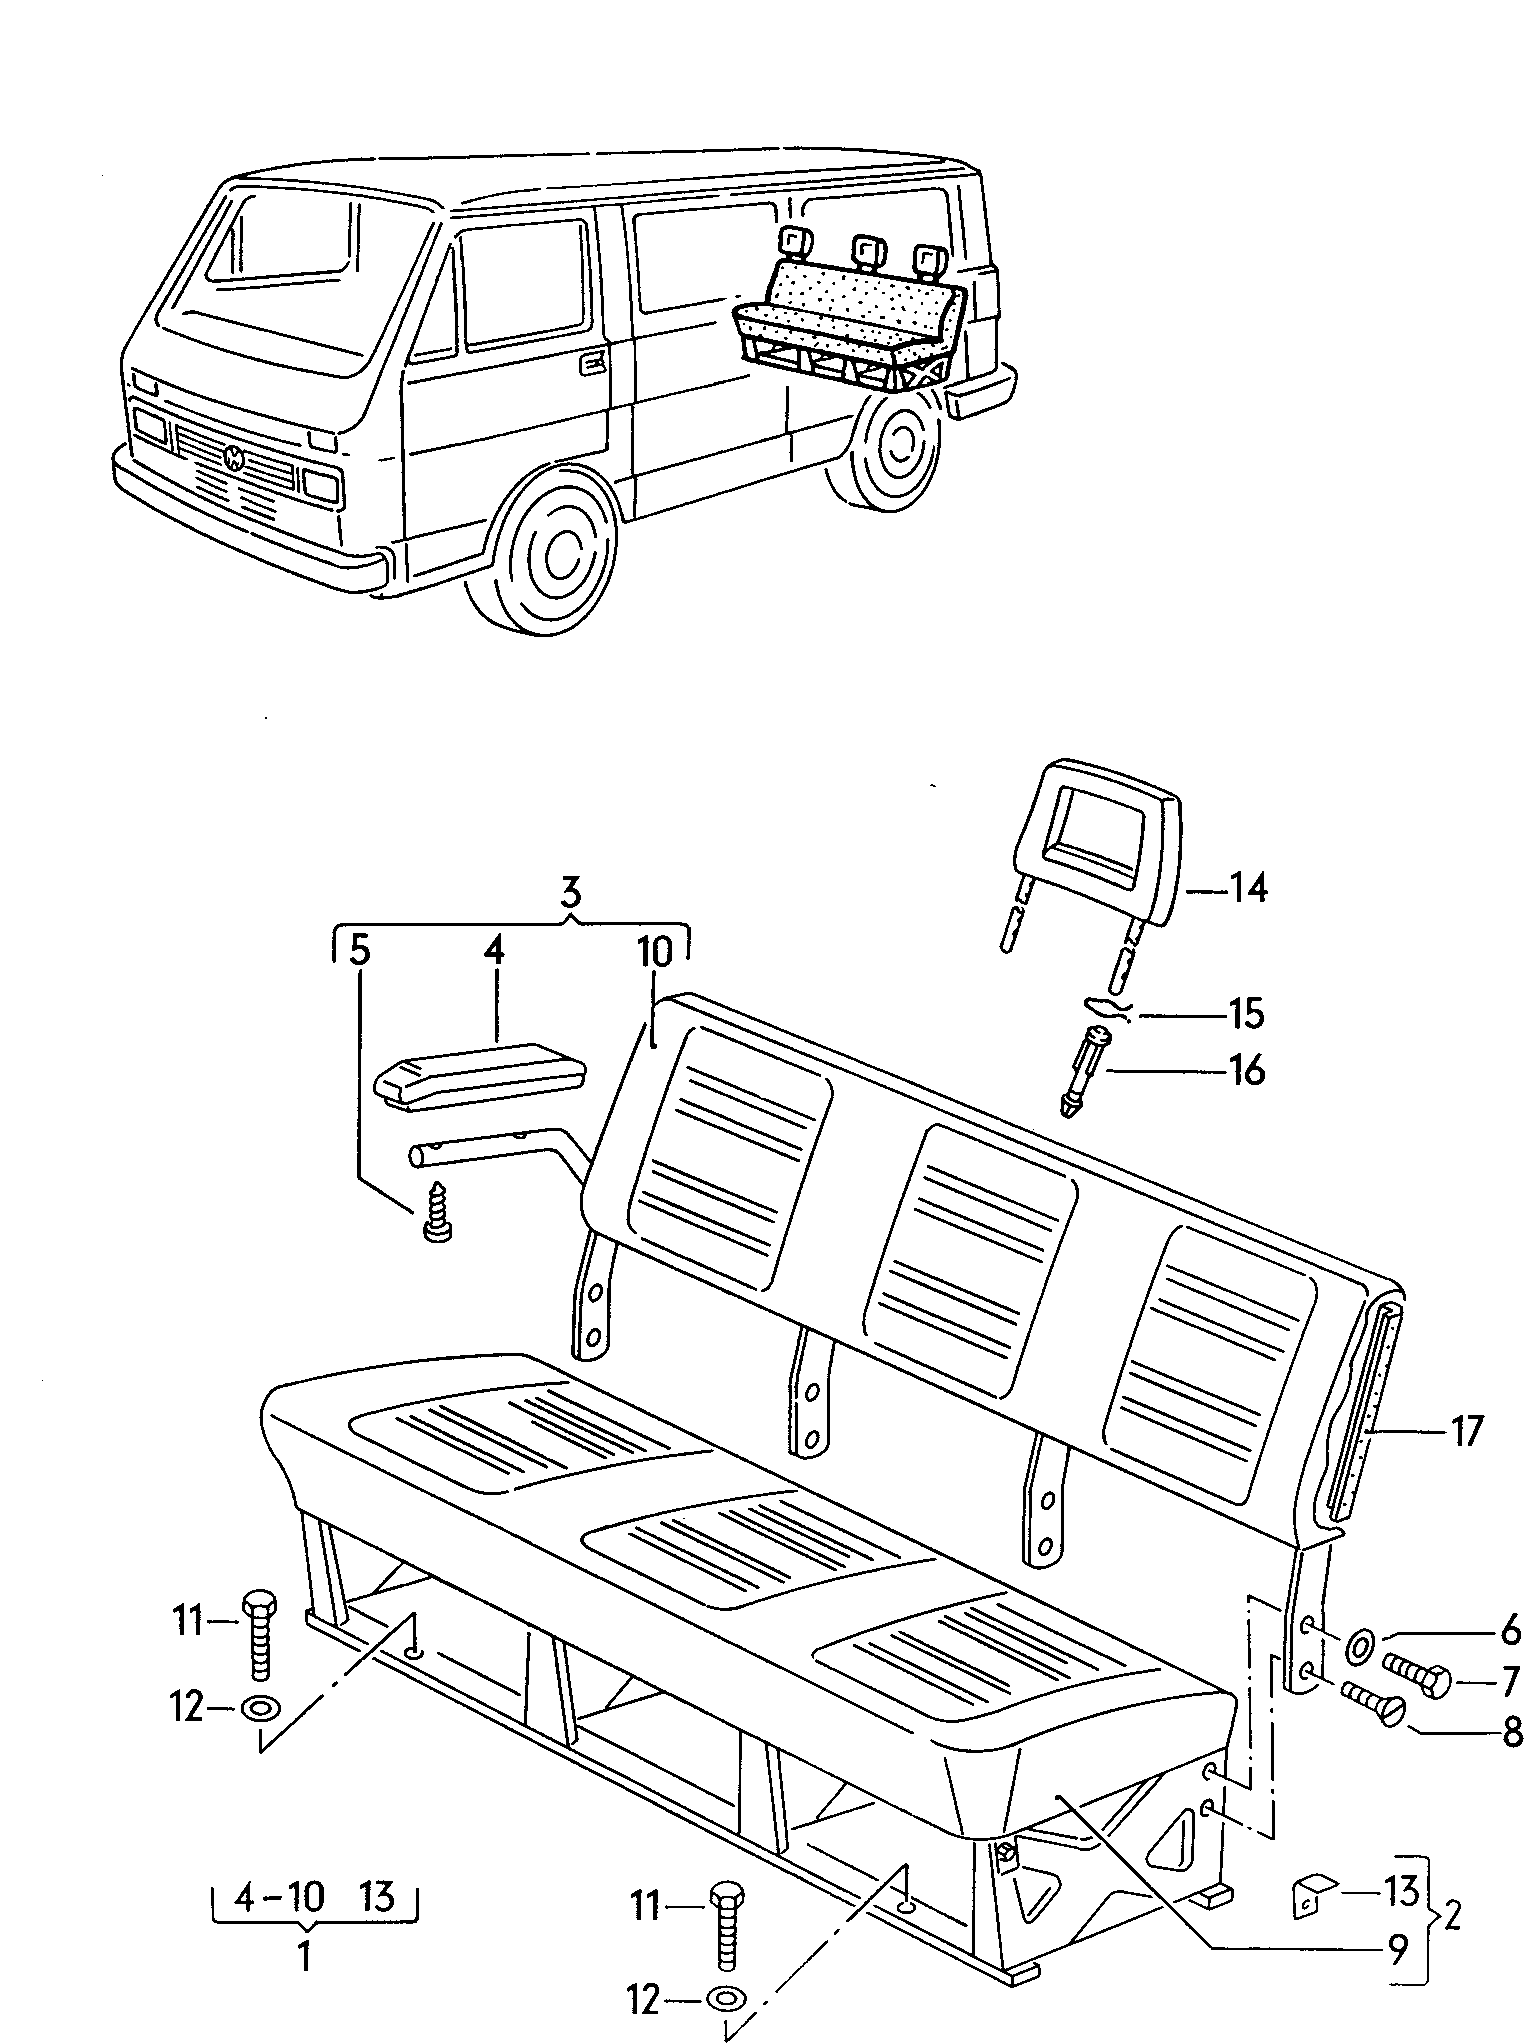 Sitz und Rückenlehne hinten - LT, LT 4x4 - lt